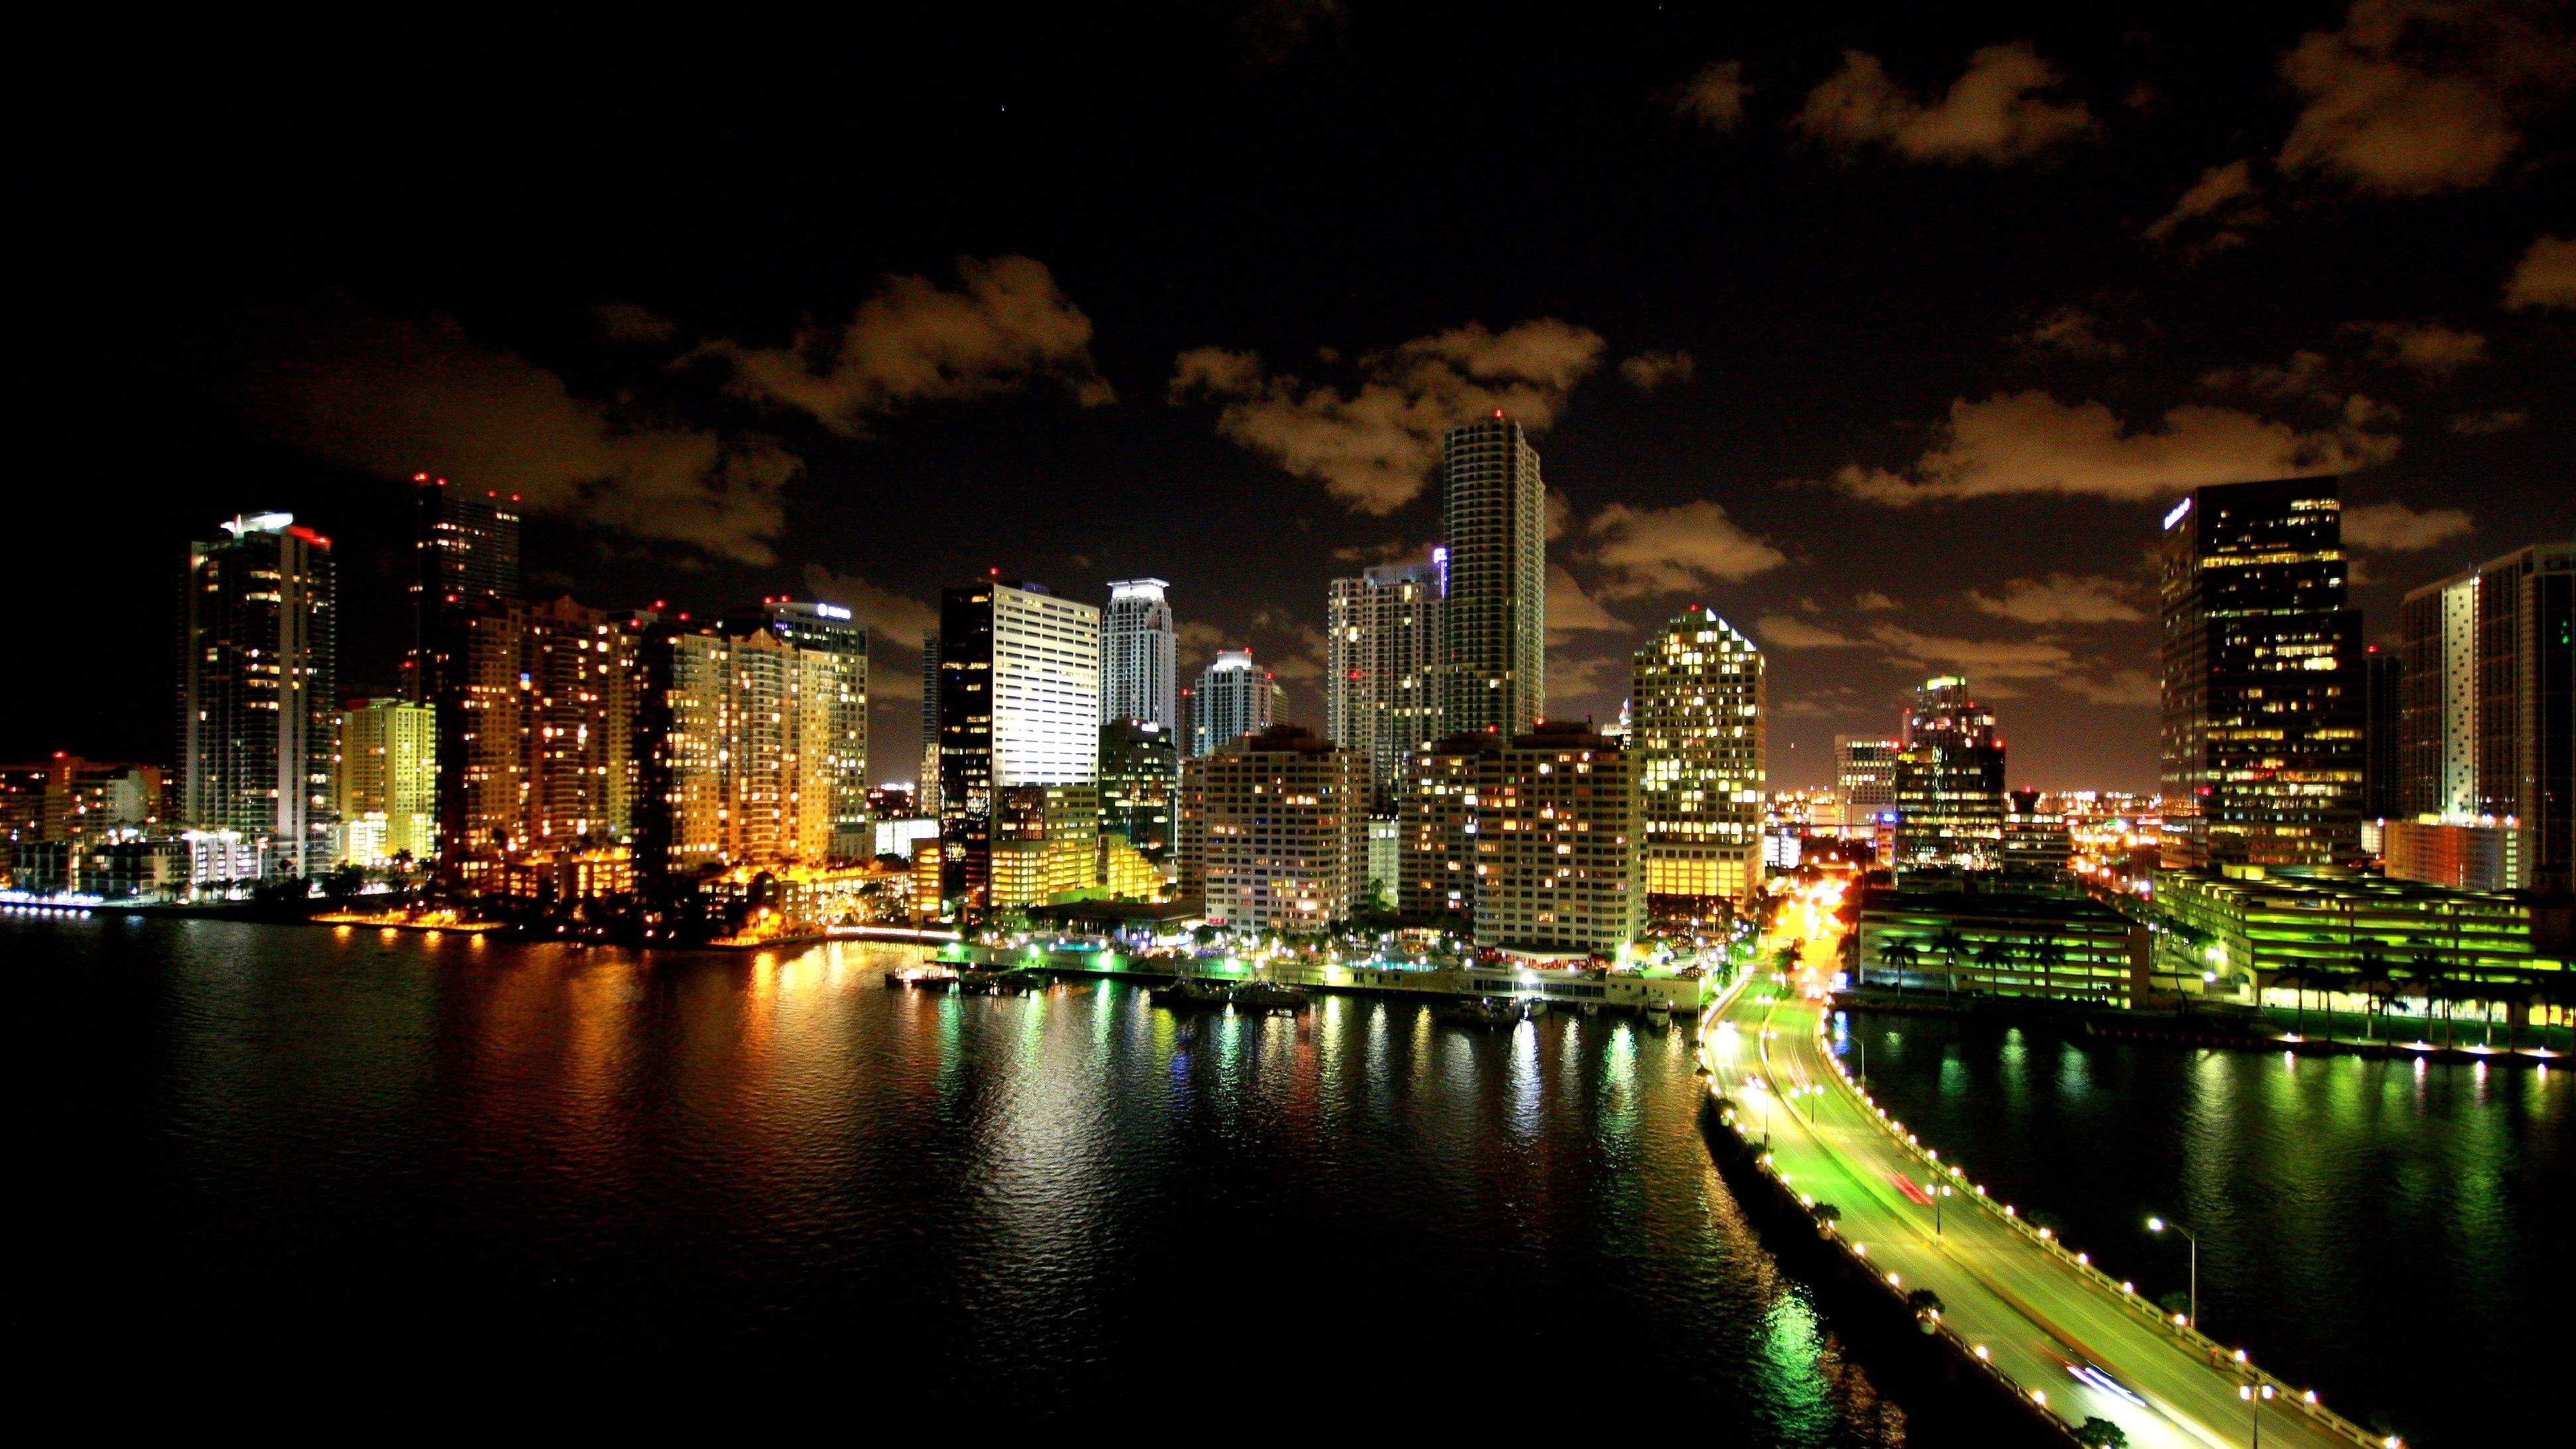 Miami Background for Computer. Miami